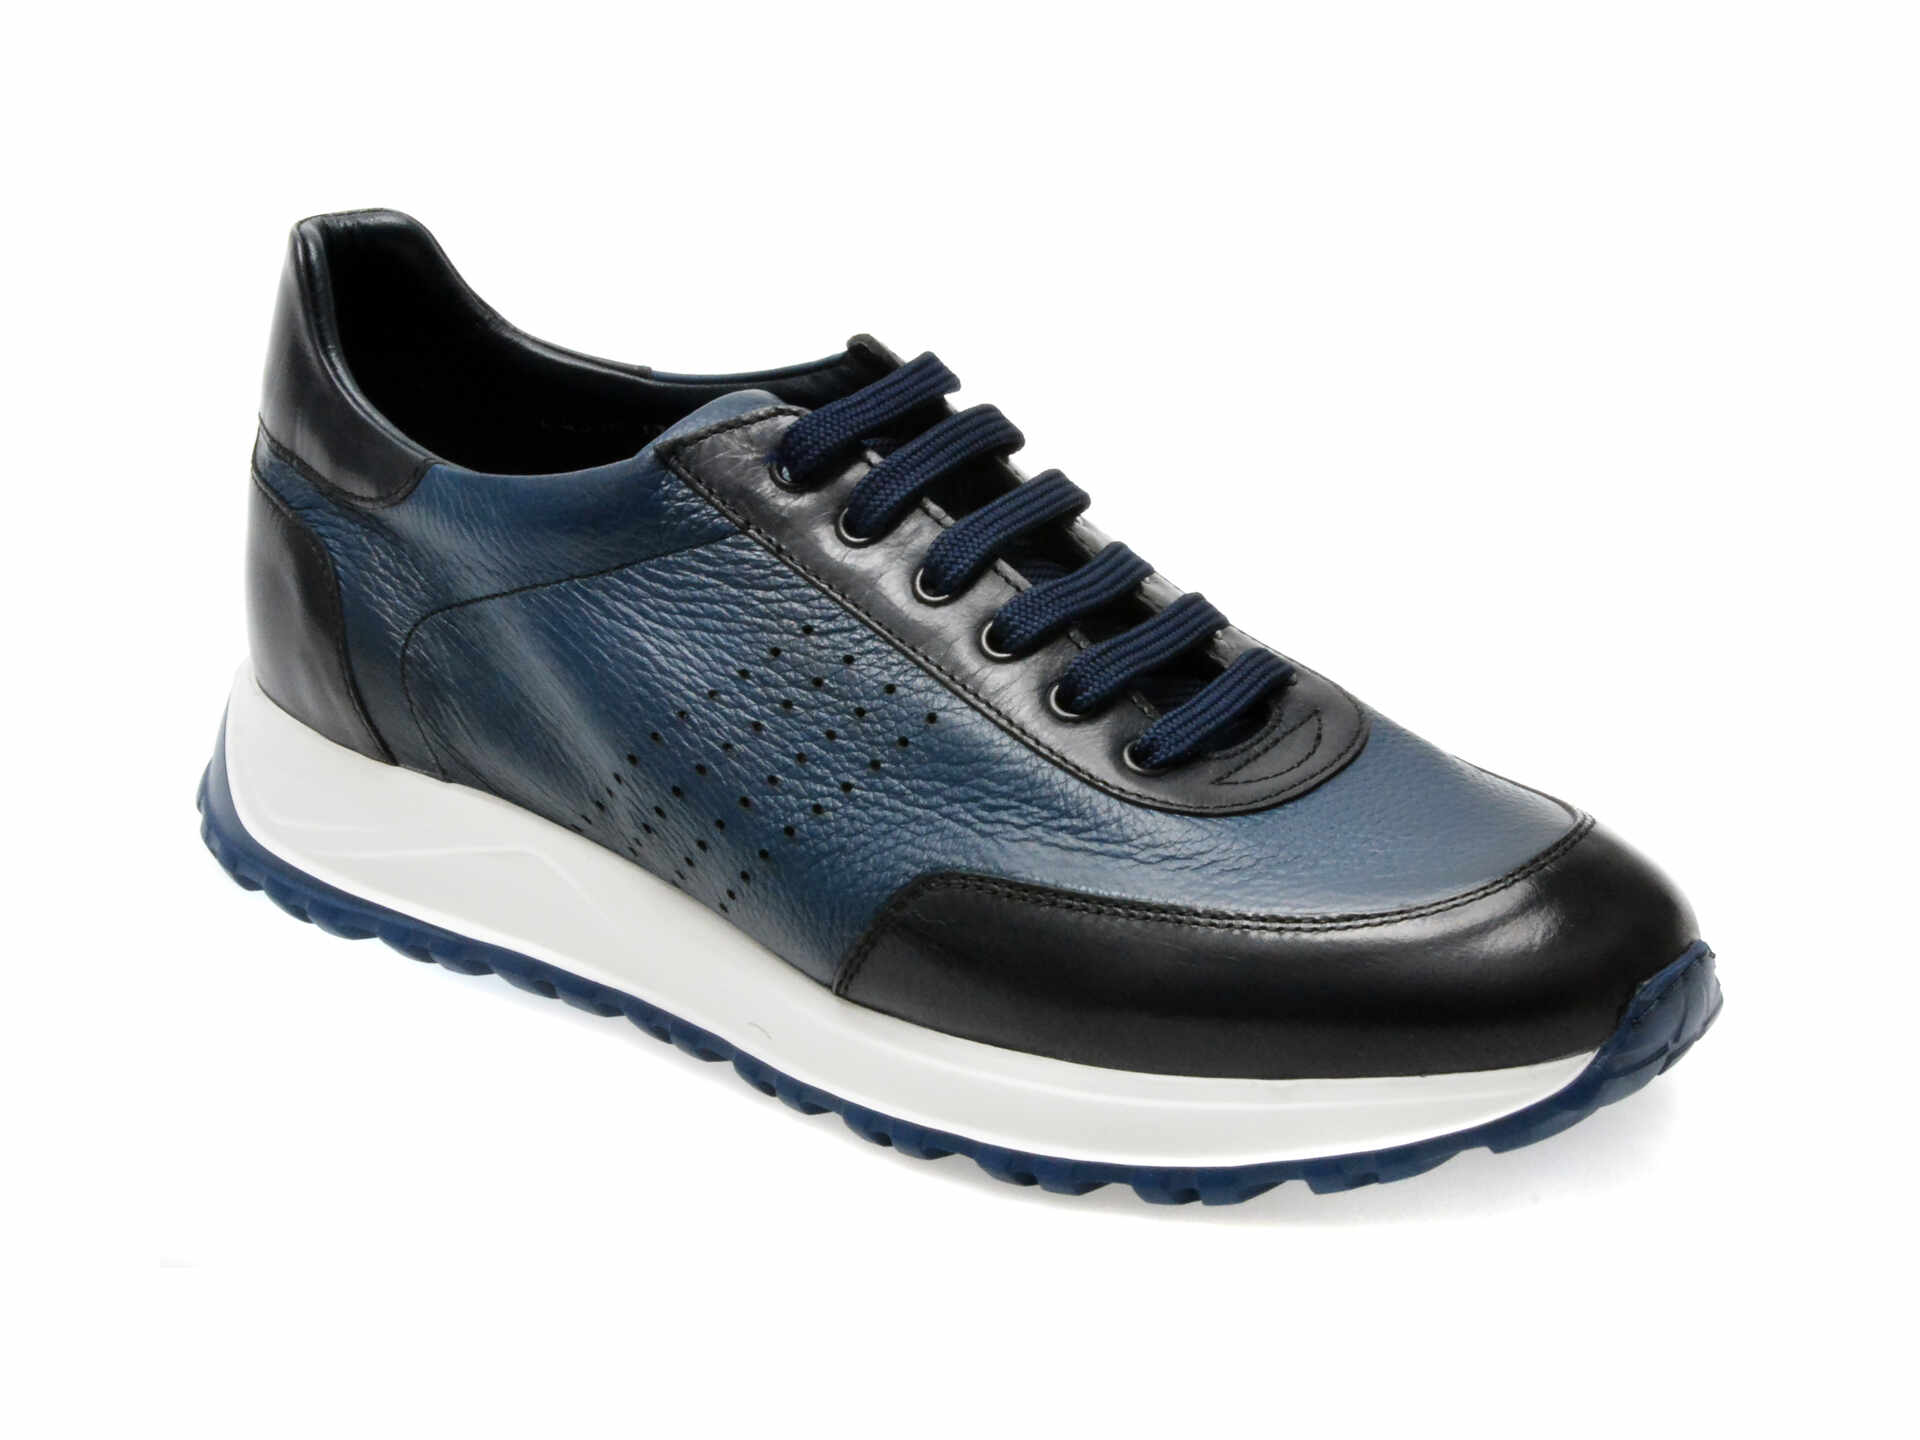 Pantofi casual LE COLONEL albastri, 643541, din piele naturala